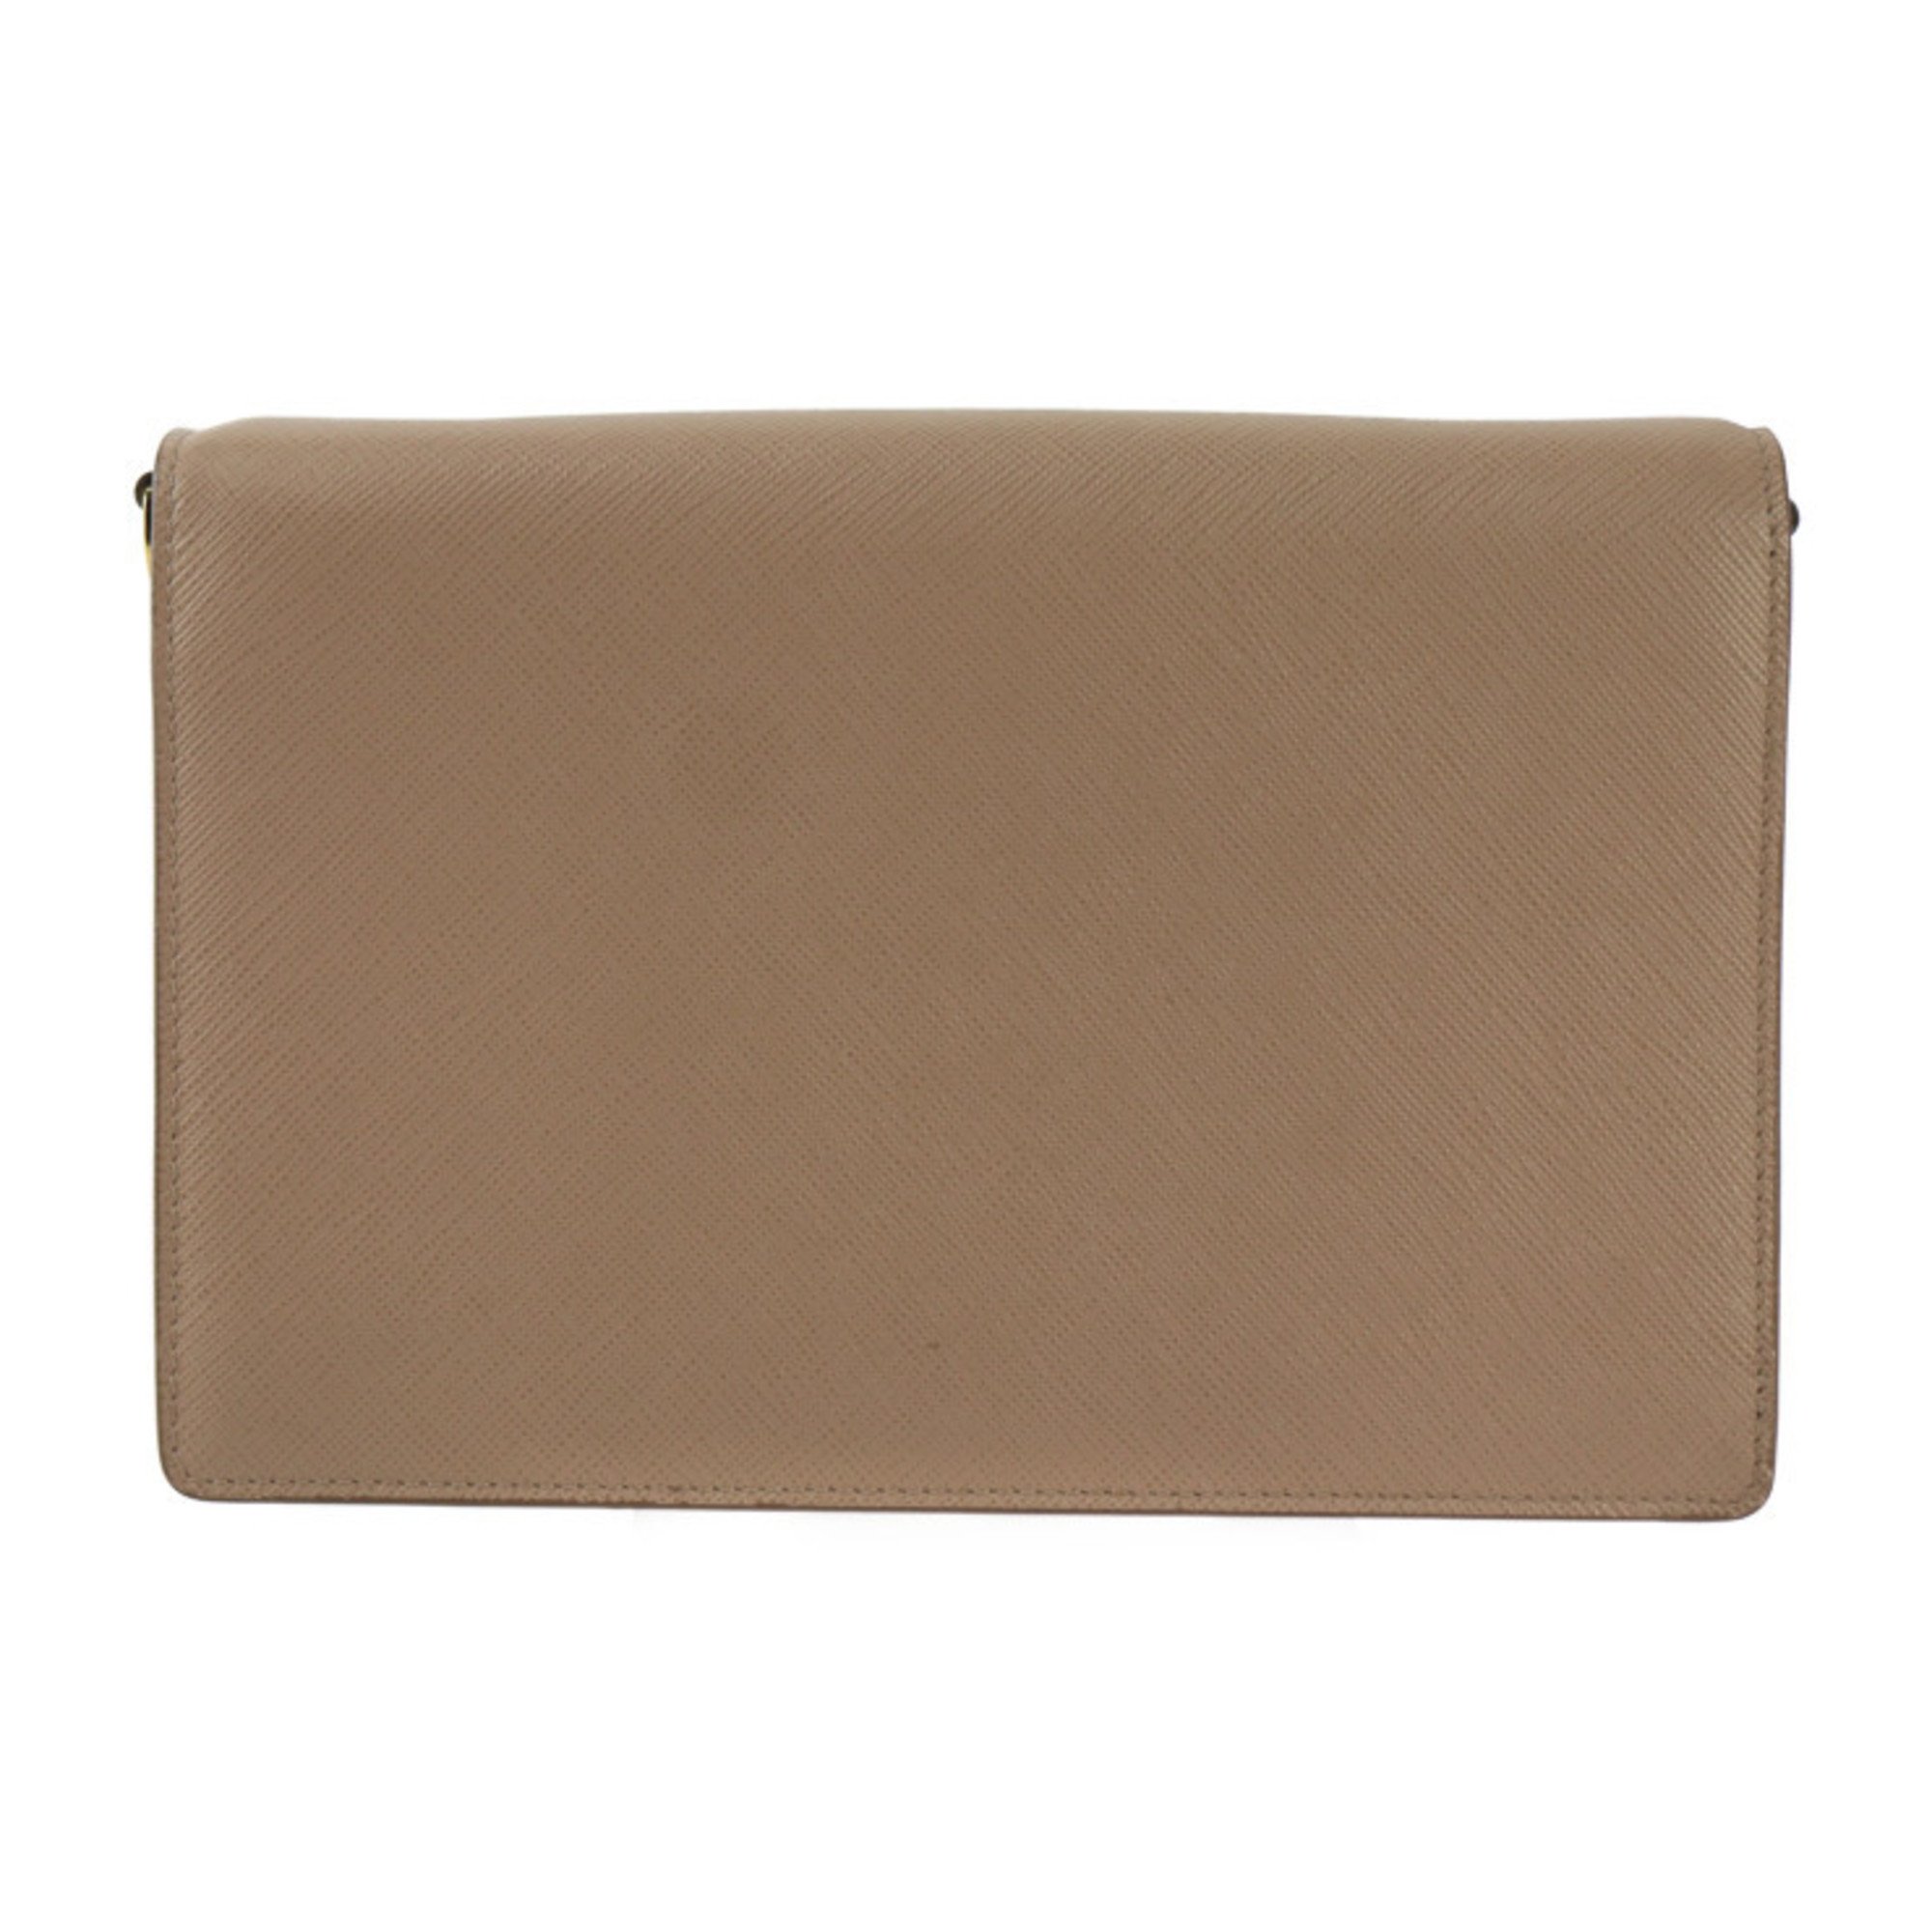 PRADA Mini Envelope Shoulder Bag 1BP020 Saffiano Leather CIPRIA Pink Beige Gold Hardware Wallet 2WAY Clutch